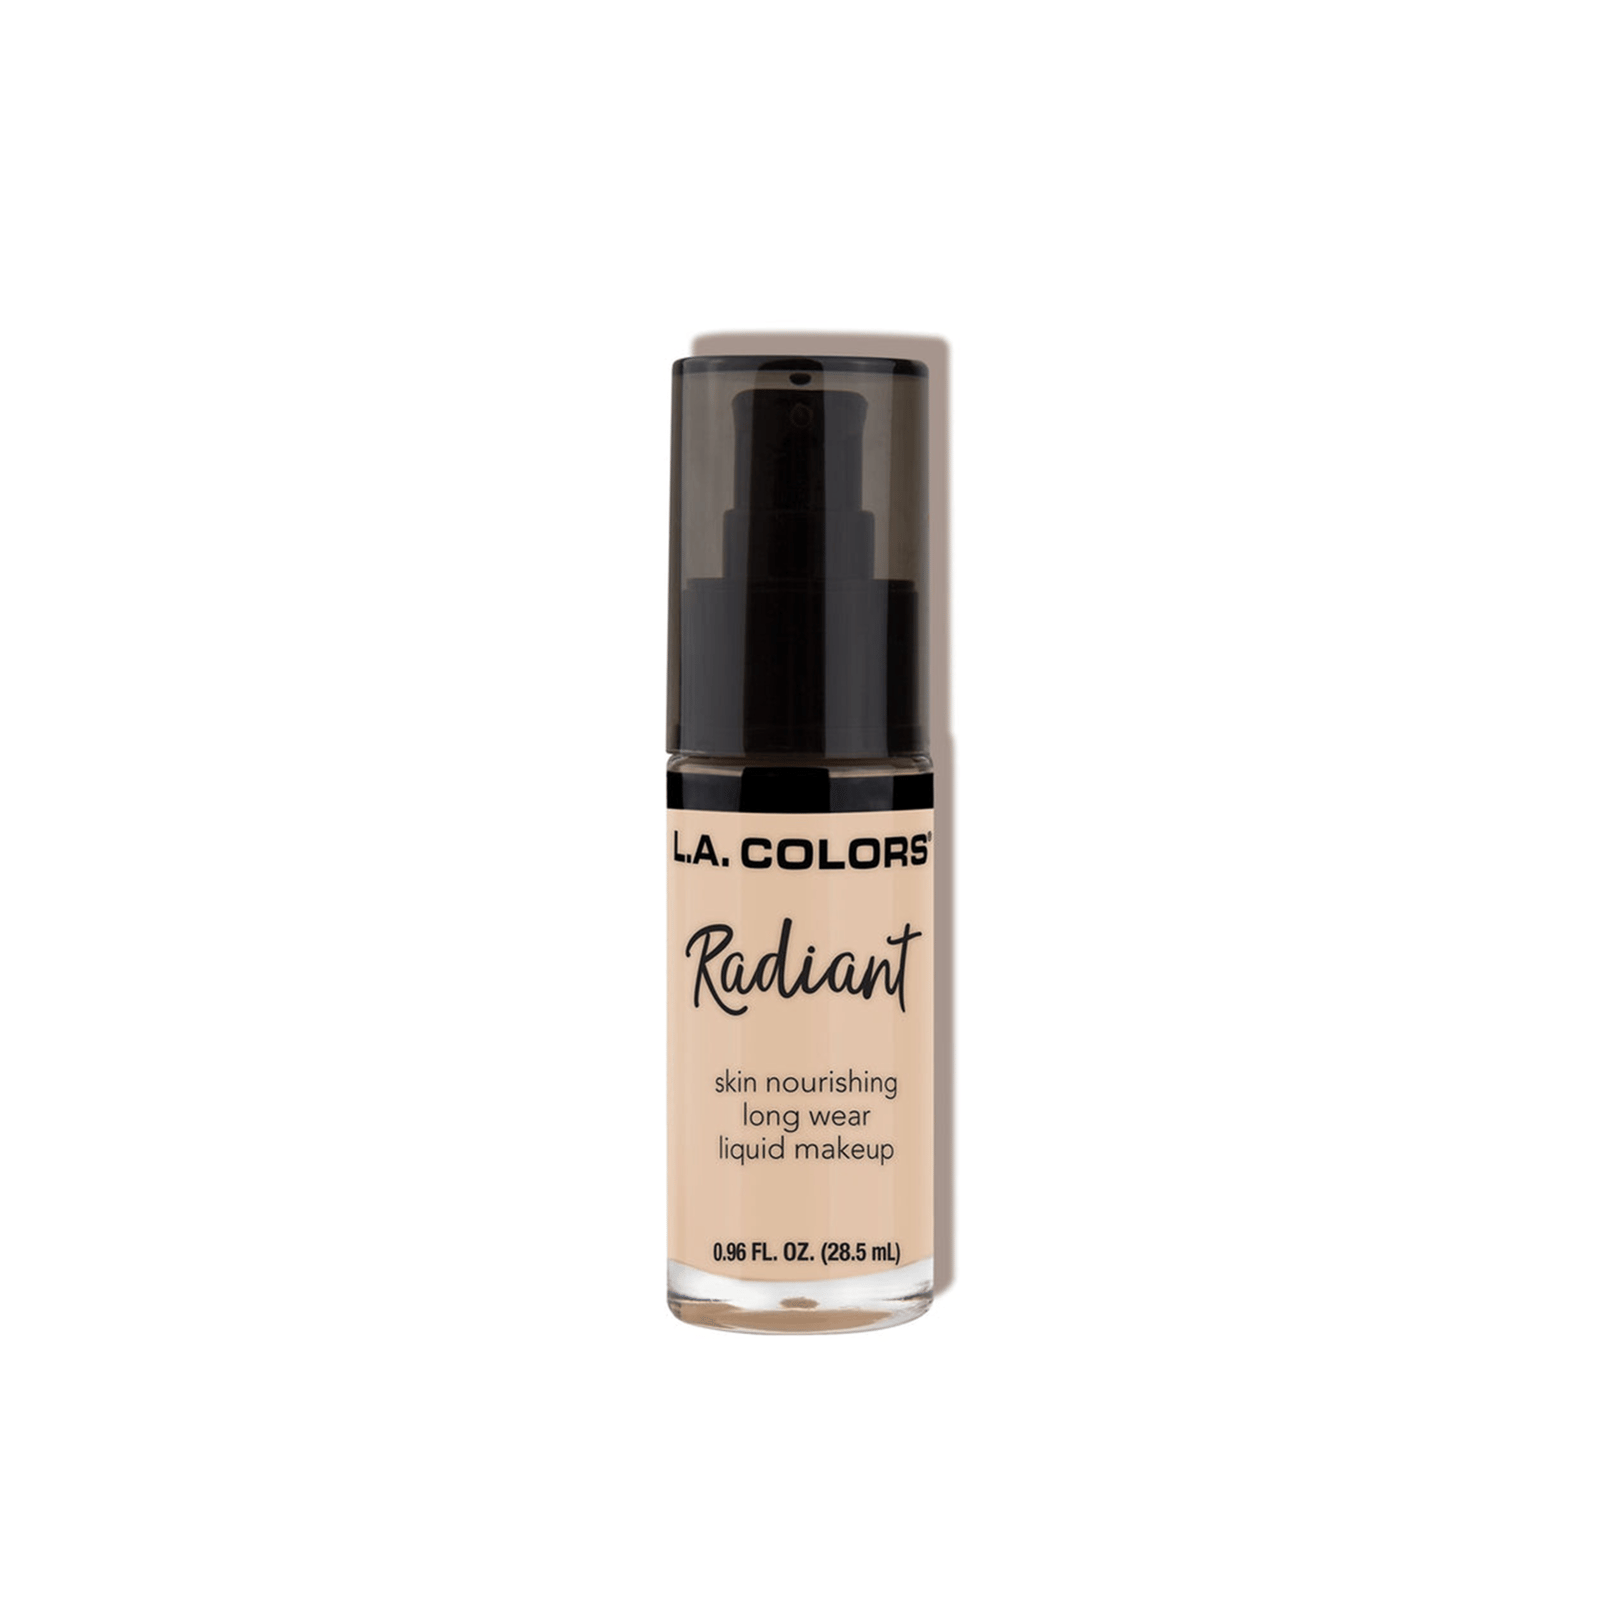 L.A. Colors Radiant Liquid Makeup Foundation CLM386 Vanilla 28.5ml (0.96 fl oz)